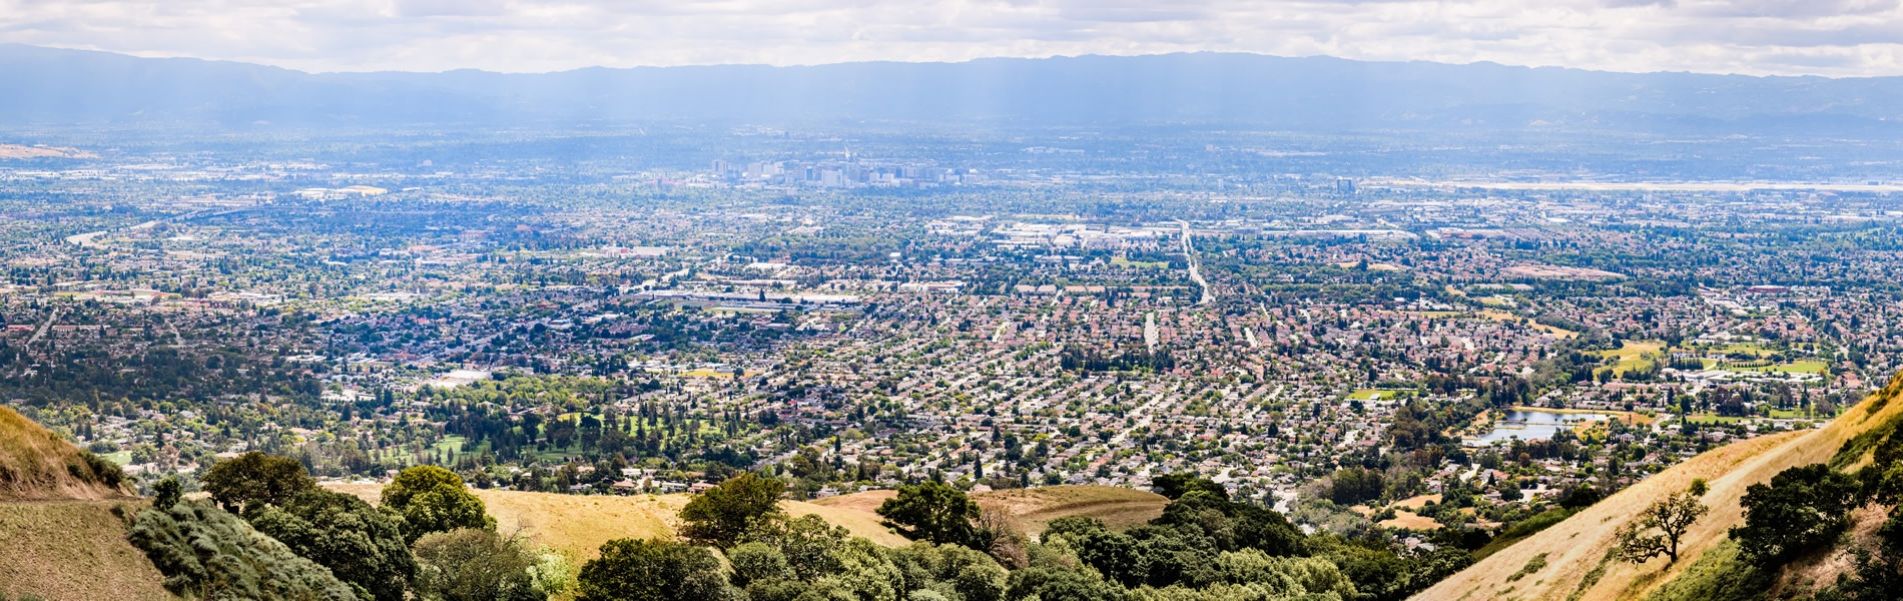 San Jose Panorama 1900x600